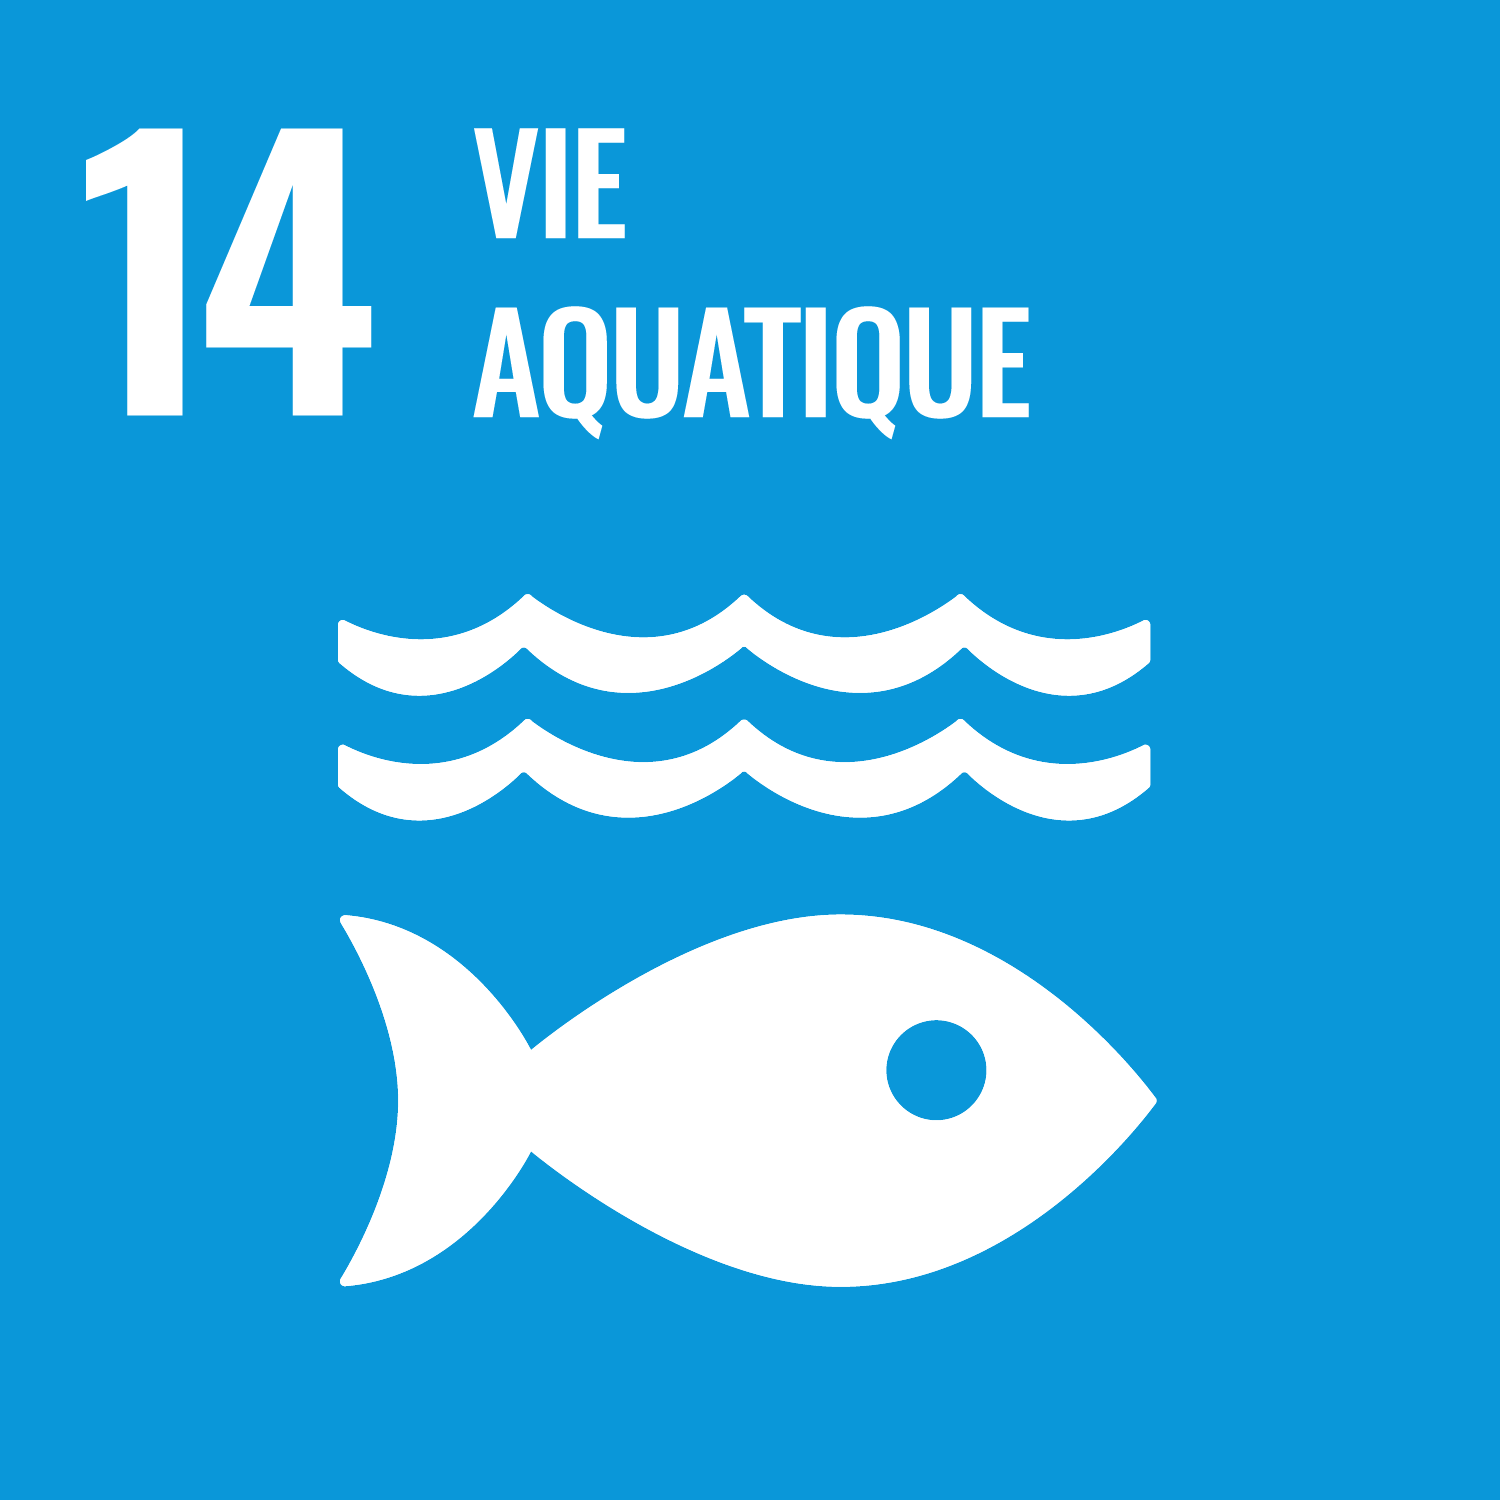 14 - Vie aquatique